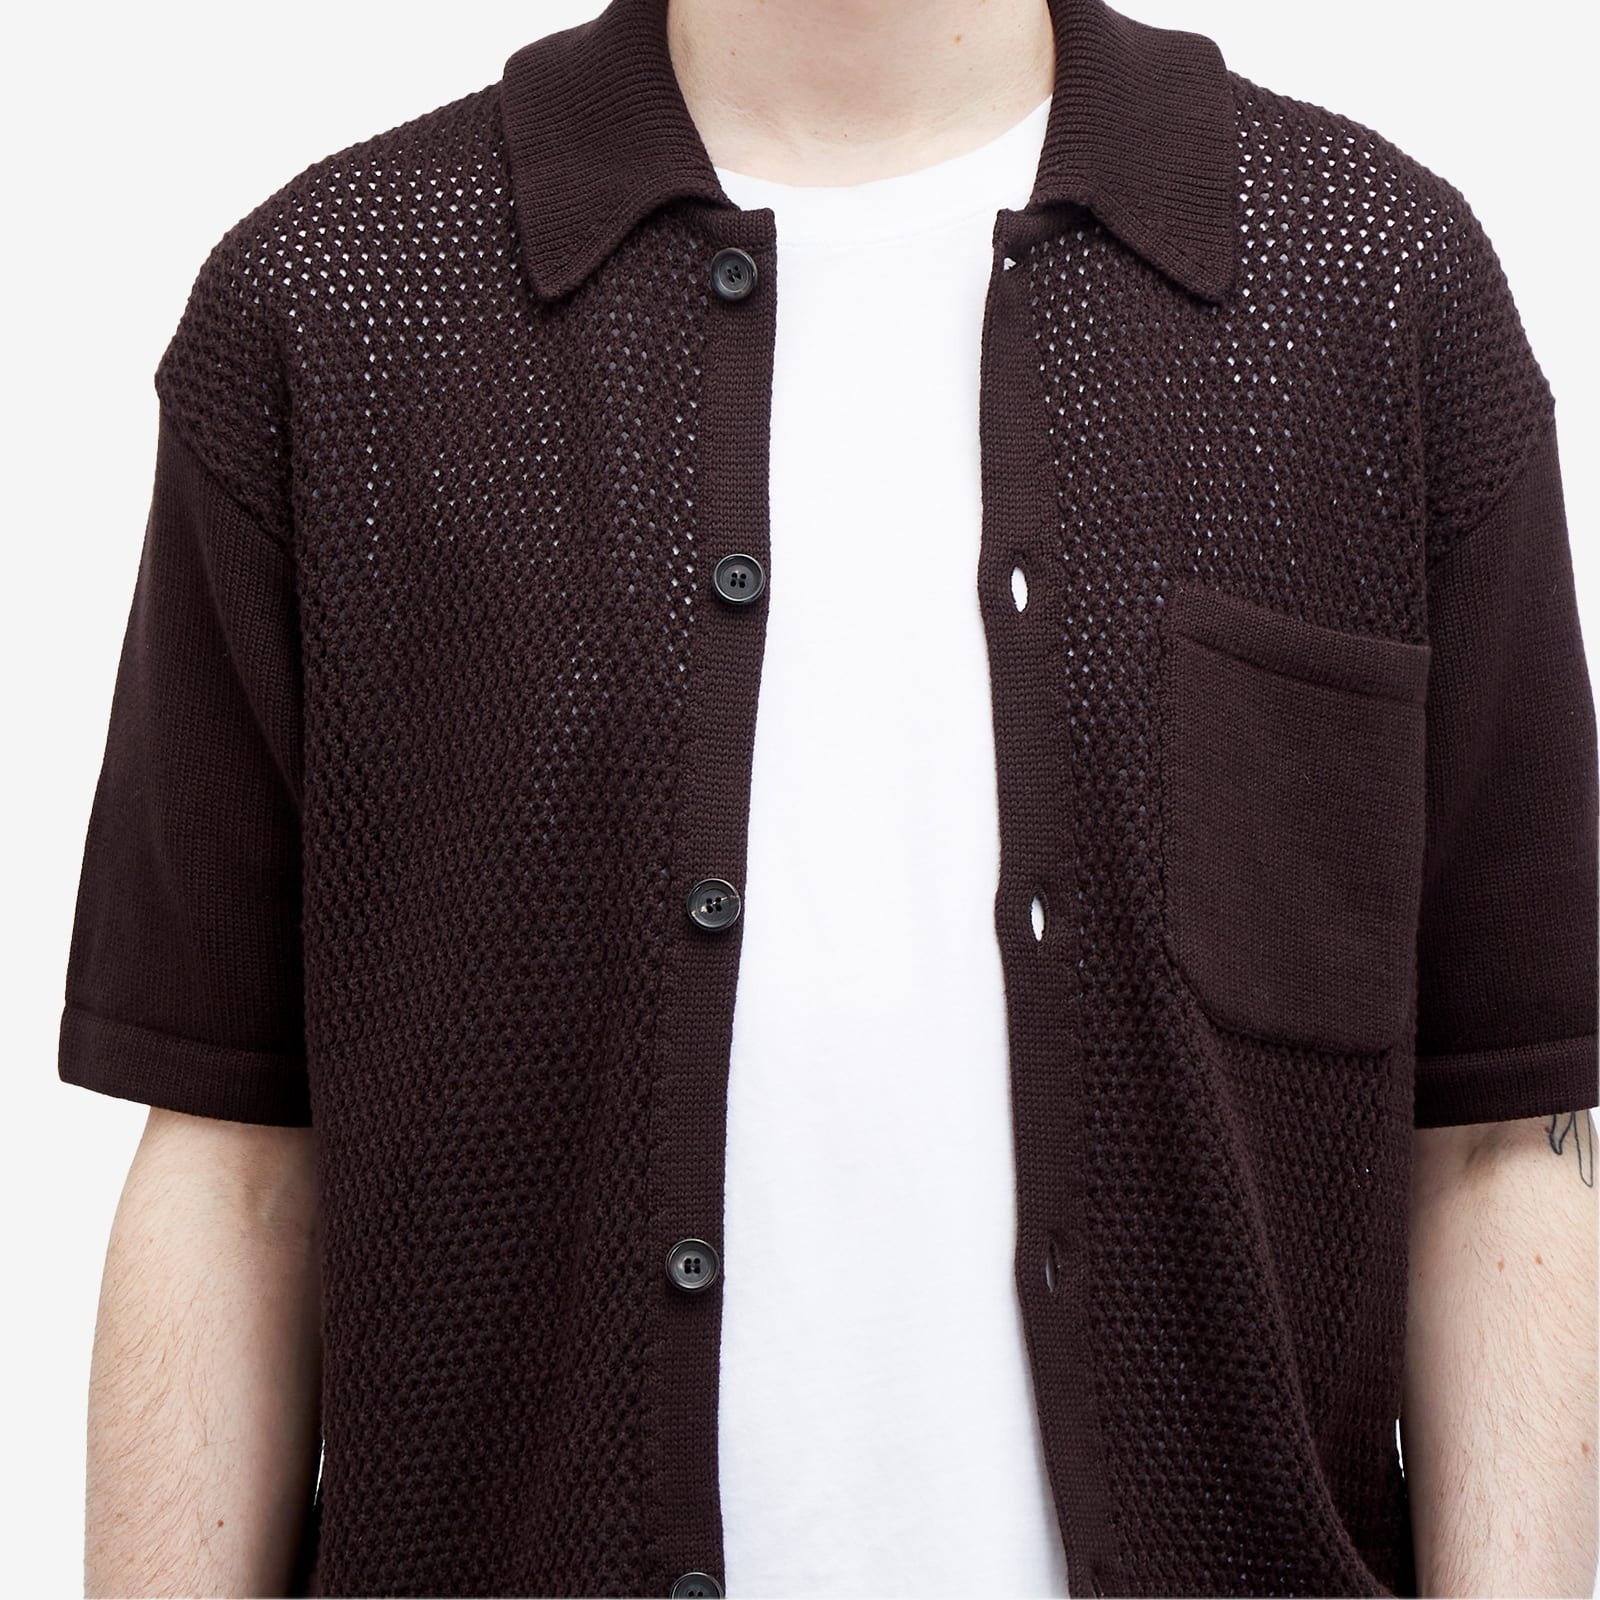 Oliver Spencer Mawes Short Sleeve Knitted Shirt - 5